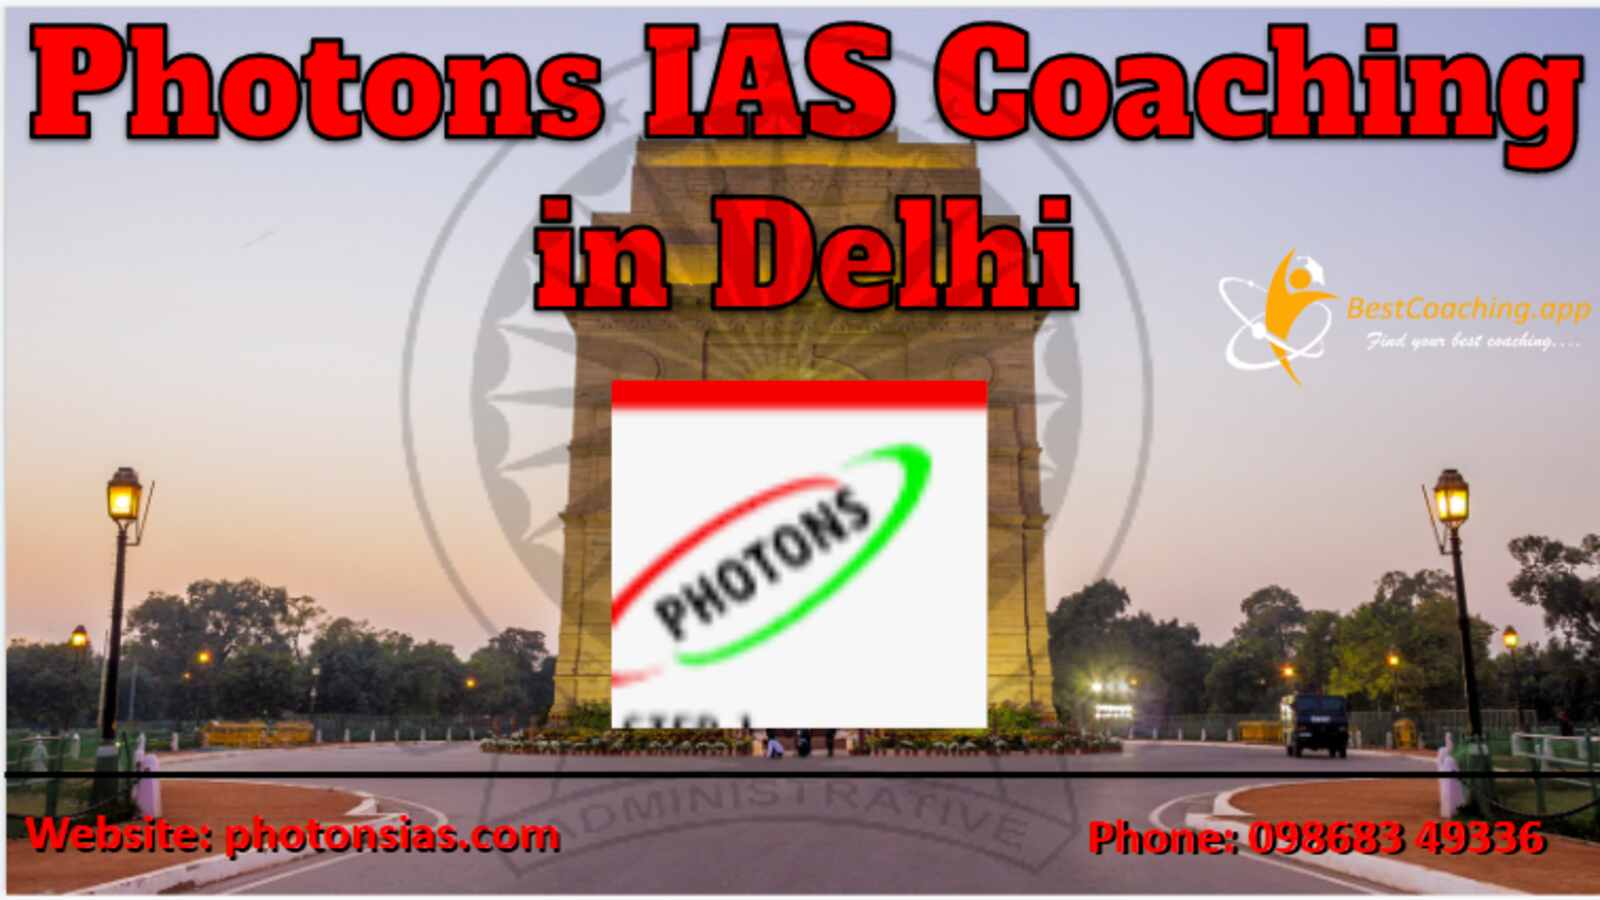 Photons IAS Coaching in Delhi